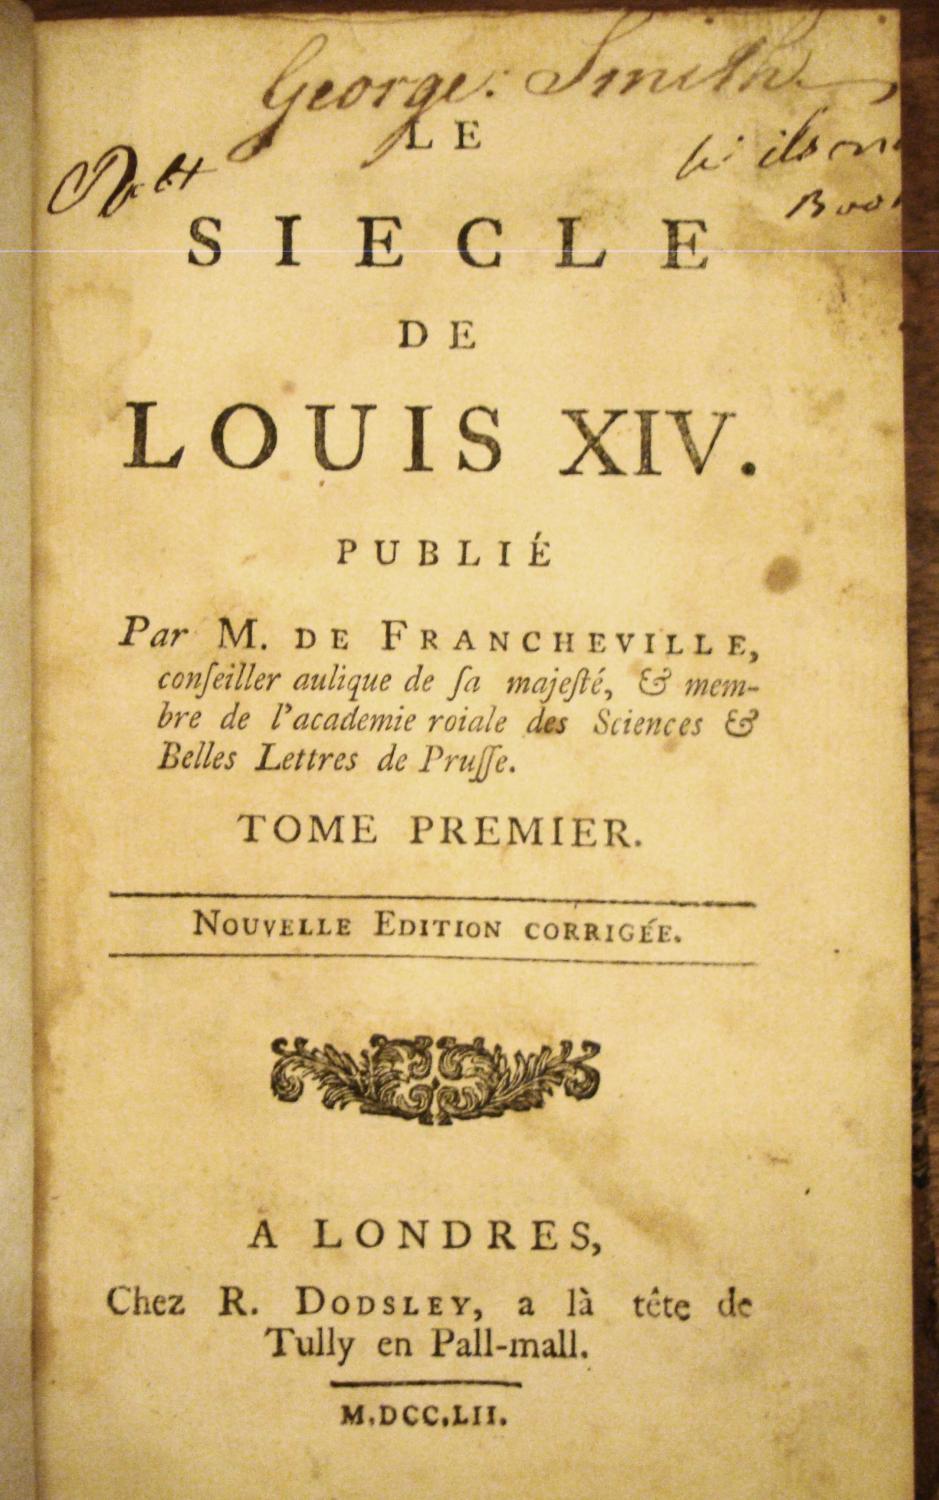  La Palatine, dans l?ombre de Louis XIV (French Edition):  9782351540282: JAMIN (Pierre-André).: Books